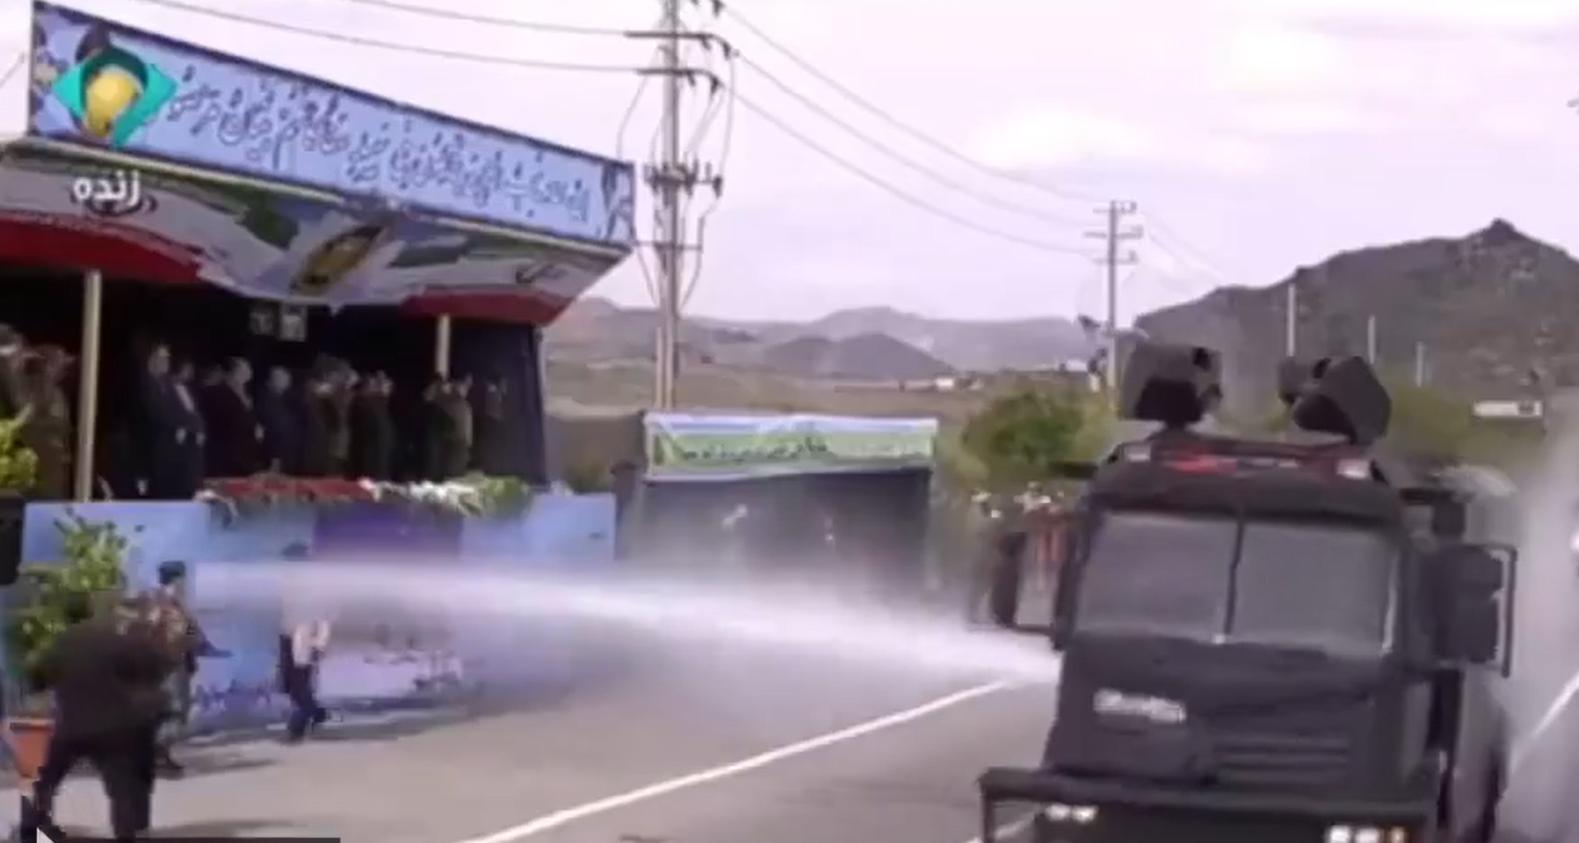 مشهد غريب لرش إبراهيم رئيسي بالماء في عرض عسكري يثير بلبلة وفتح تحقيق عاجل